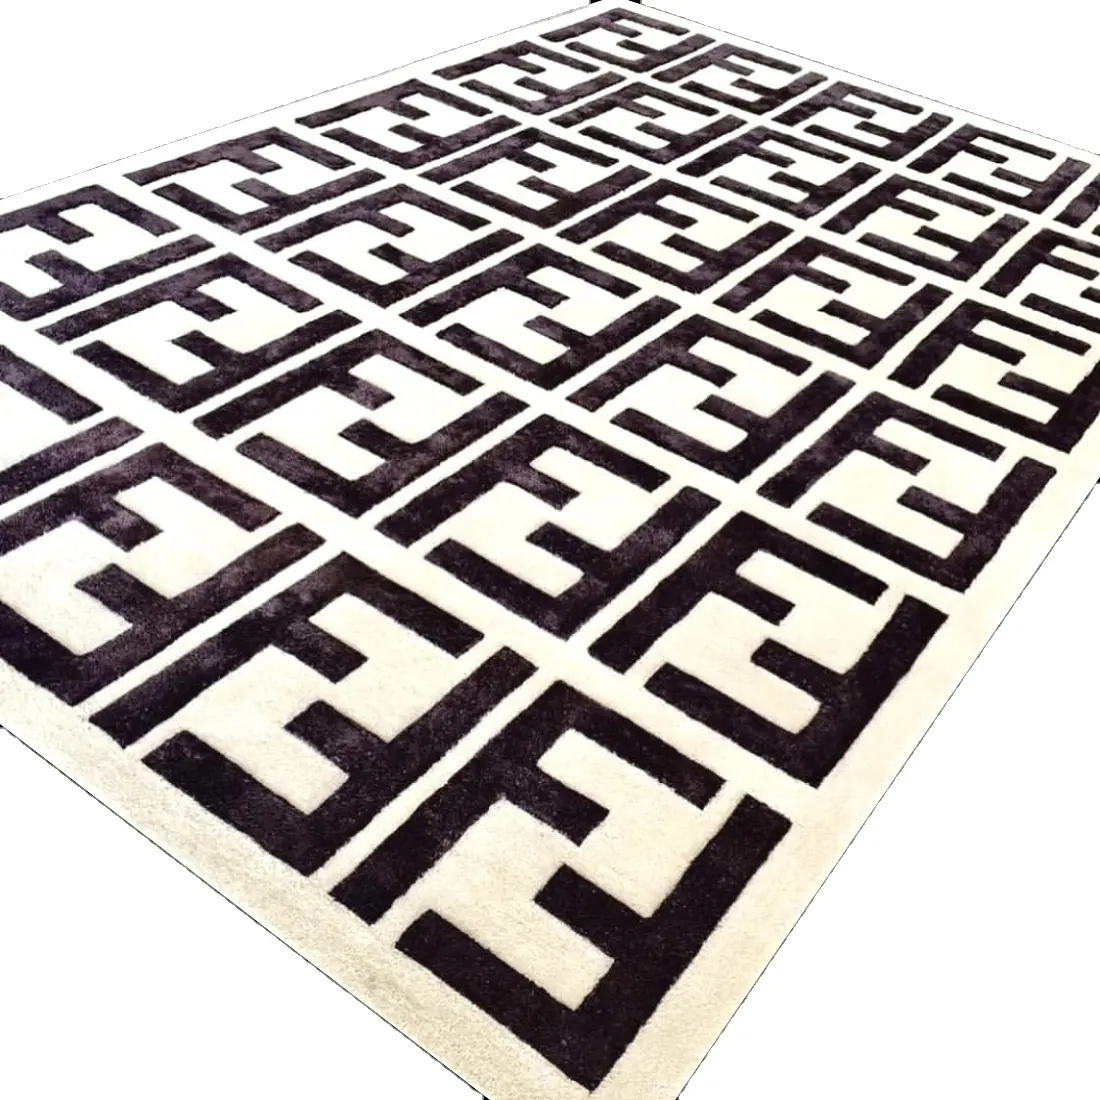 Handtufted Teppich Teppich Hochwertige alle Farben verfügbar Wohnzimmer Bodenbelag Wolle Seide Teppiche Teppich hergestellt in Hersteller Indien